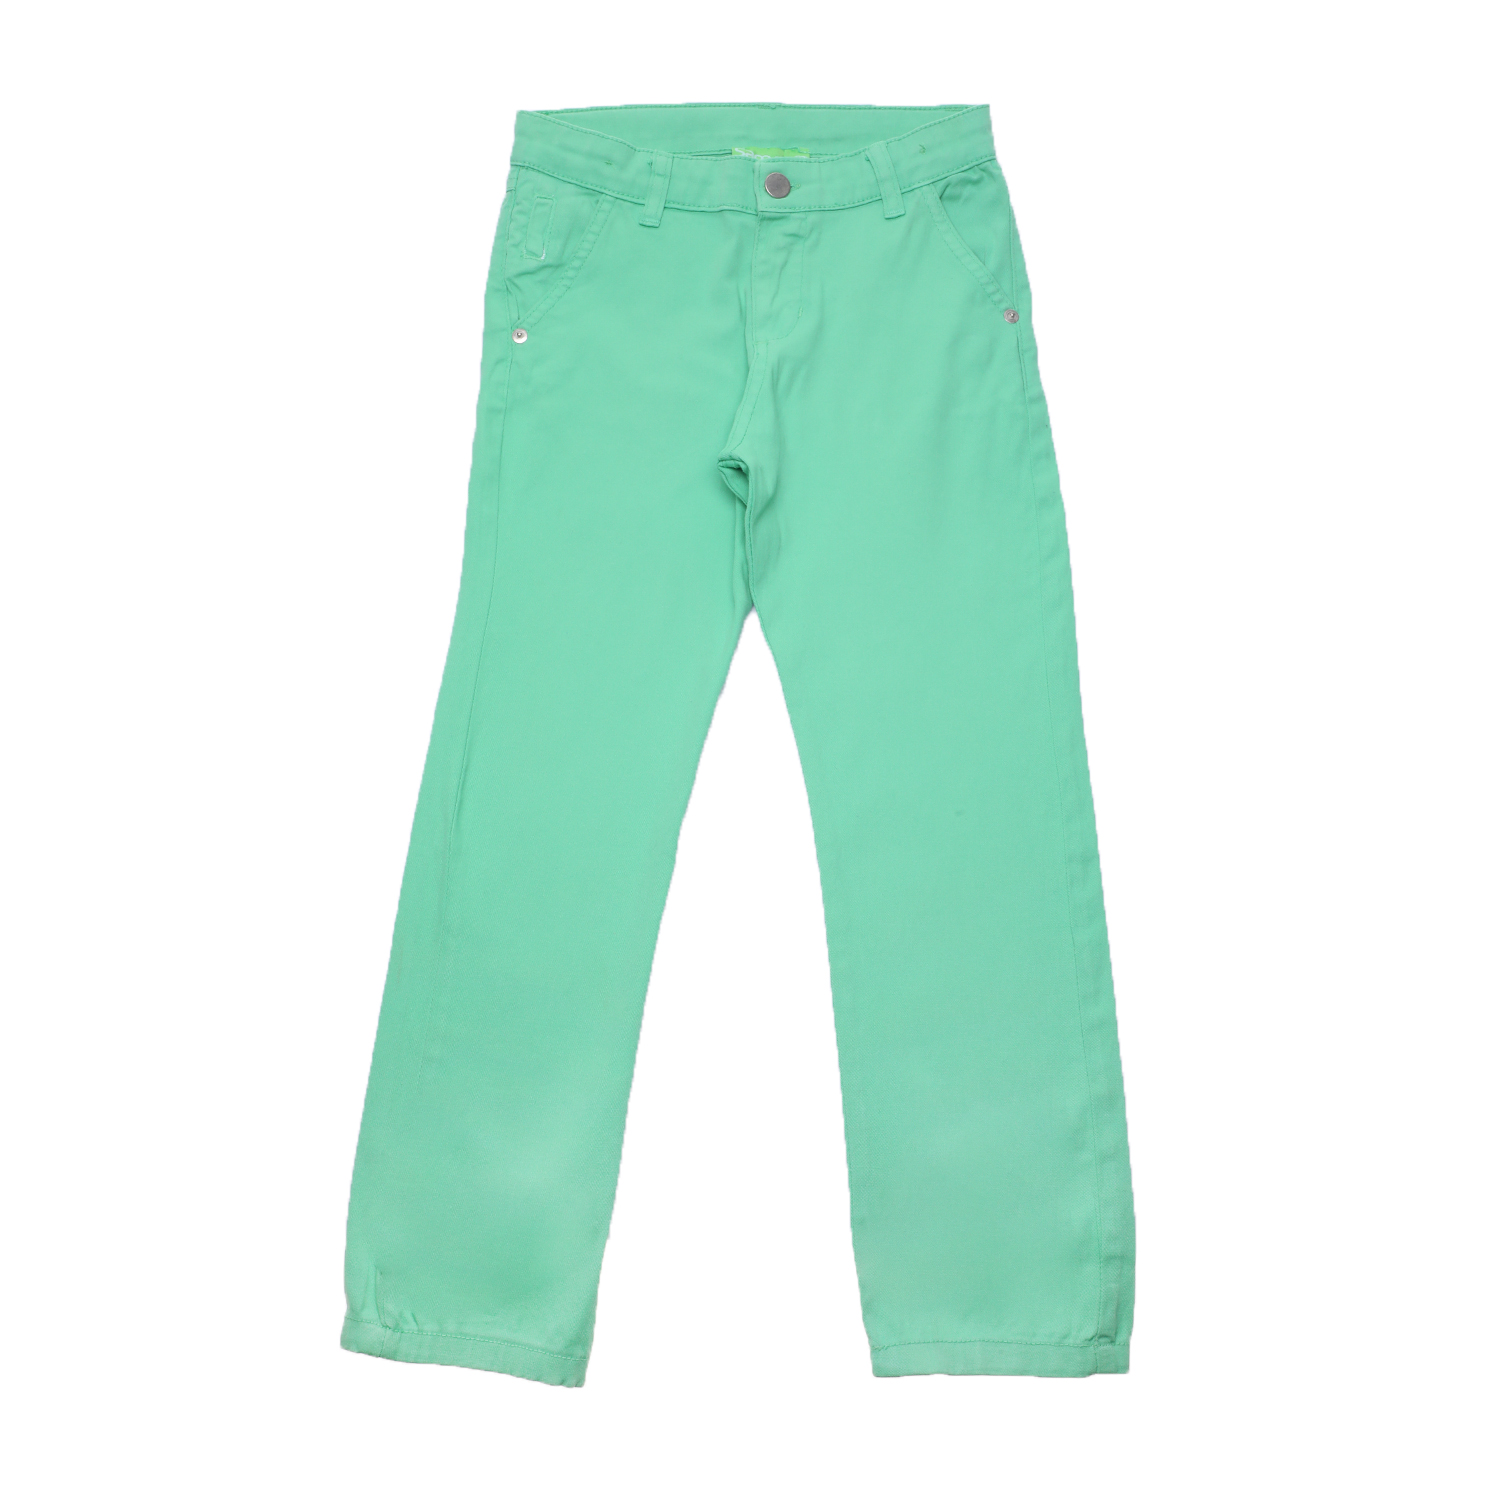 Παιδικά/Boys/Ρούχα/Παντελόνια SAM 0-13 - Παιδικό chino παντελόνι SAM 0-13 πράσινο